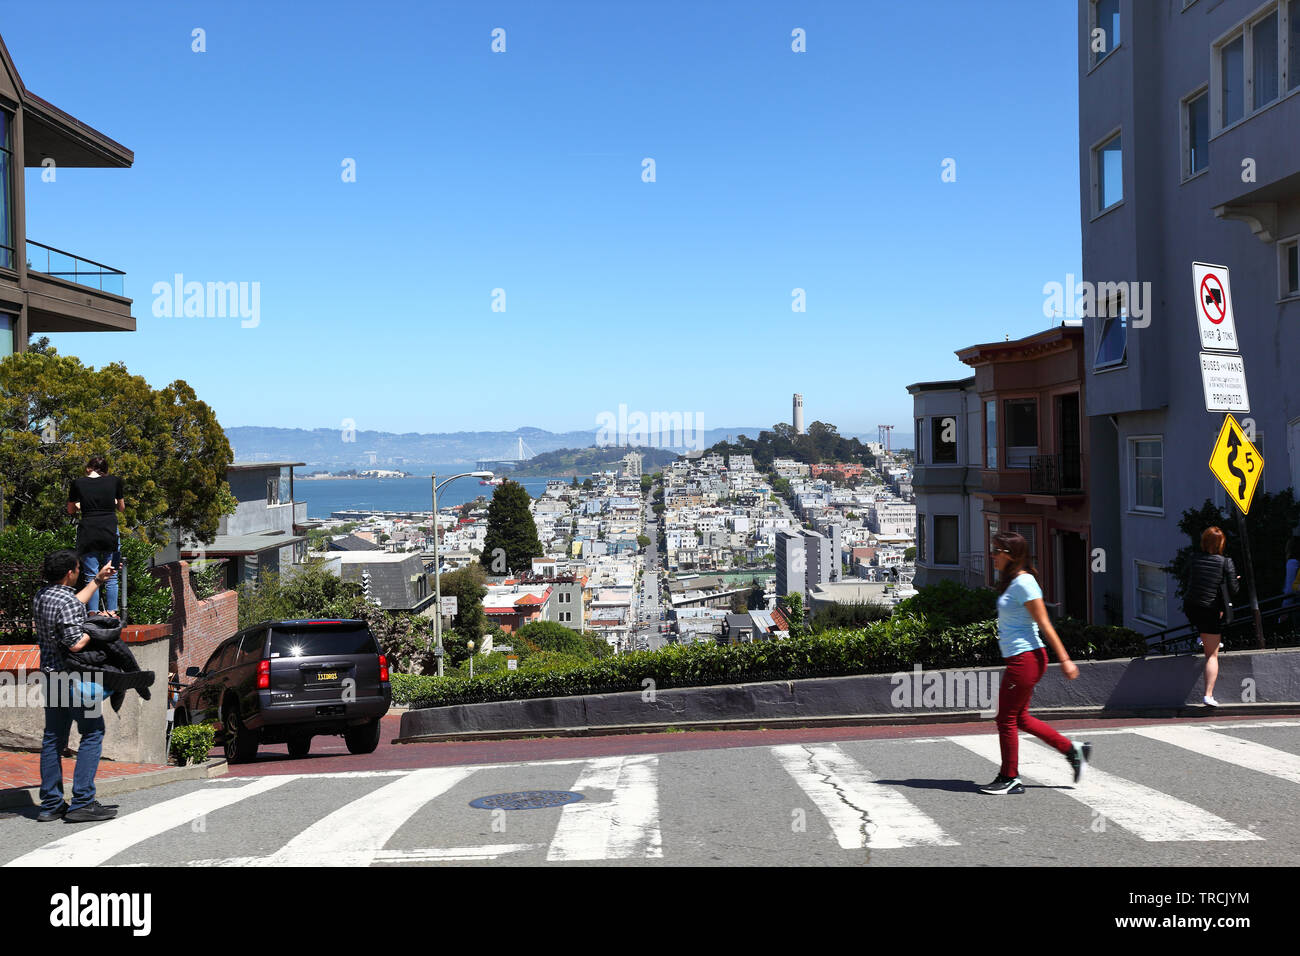 Immagine Editoriale San Francisco, Stati Uniti d'America. 22 Aprile 2019: Turisti in cima al famoso crooked Lombard Street guardando verso il Colle del Telegrafo. Foto Stock